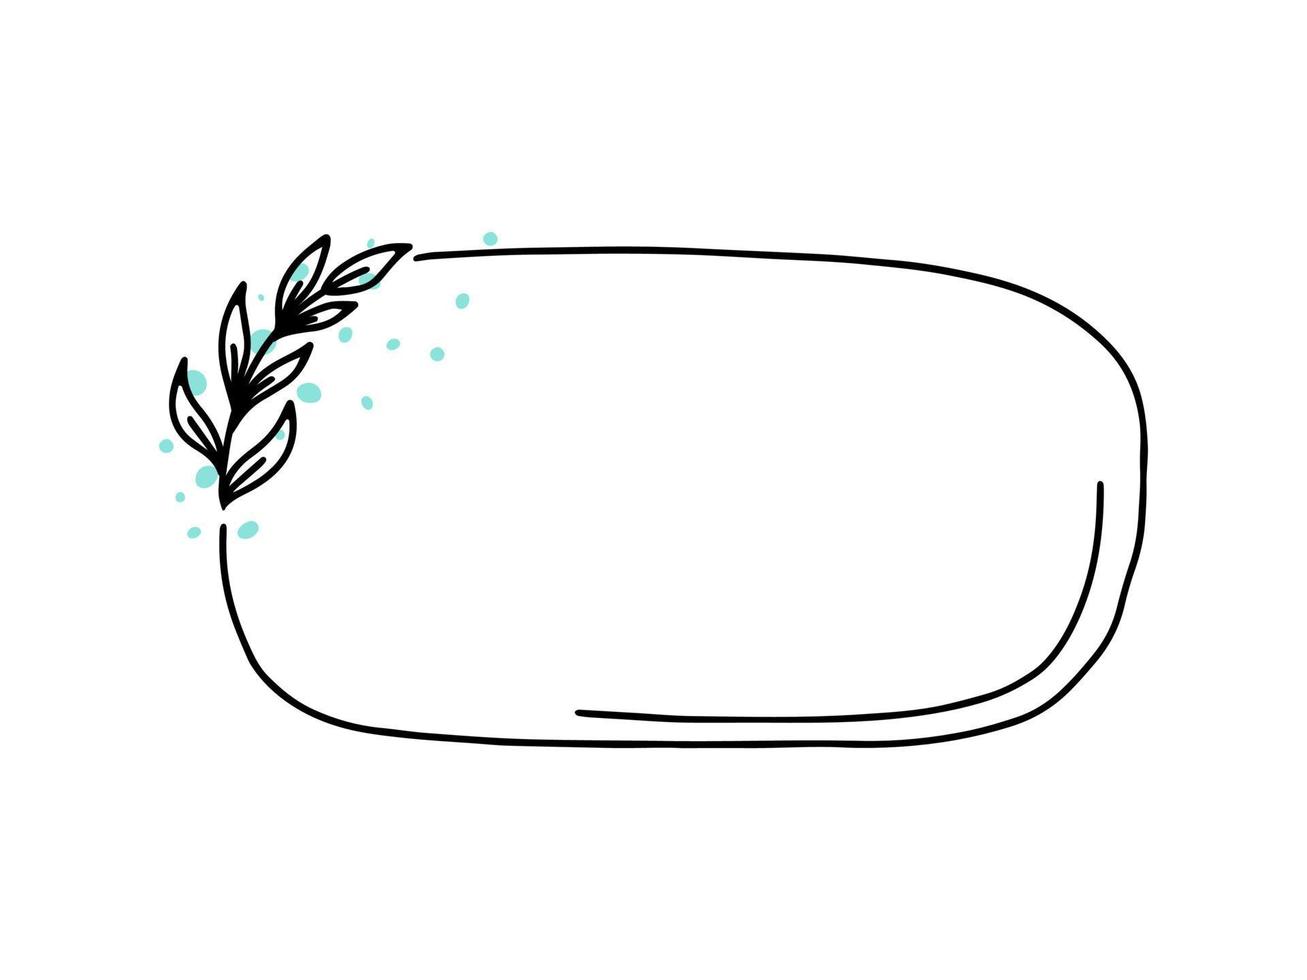 horizontale ovale vector bloemen frame, grens met doodle blad elementen. handgetekende schetsstijl voor uitnodiging, wenskaart, sociale media